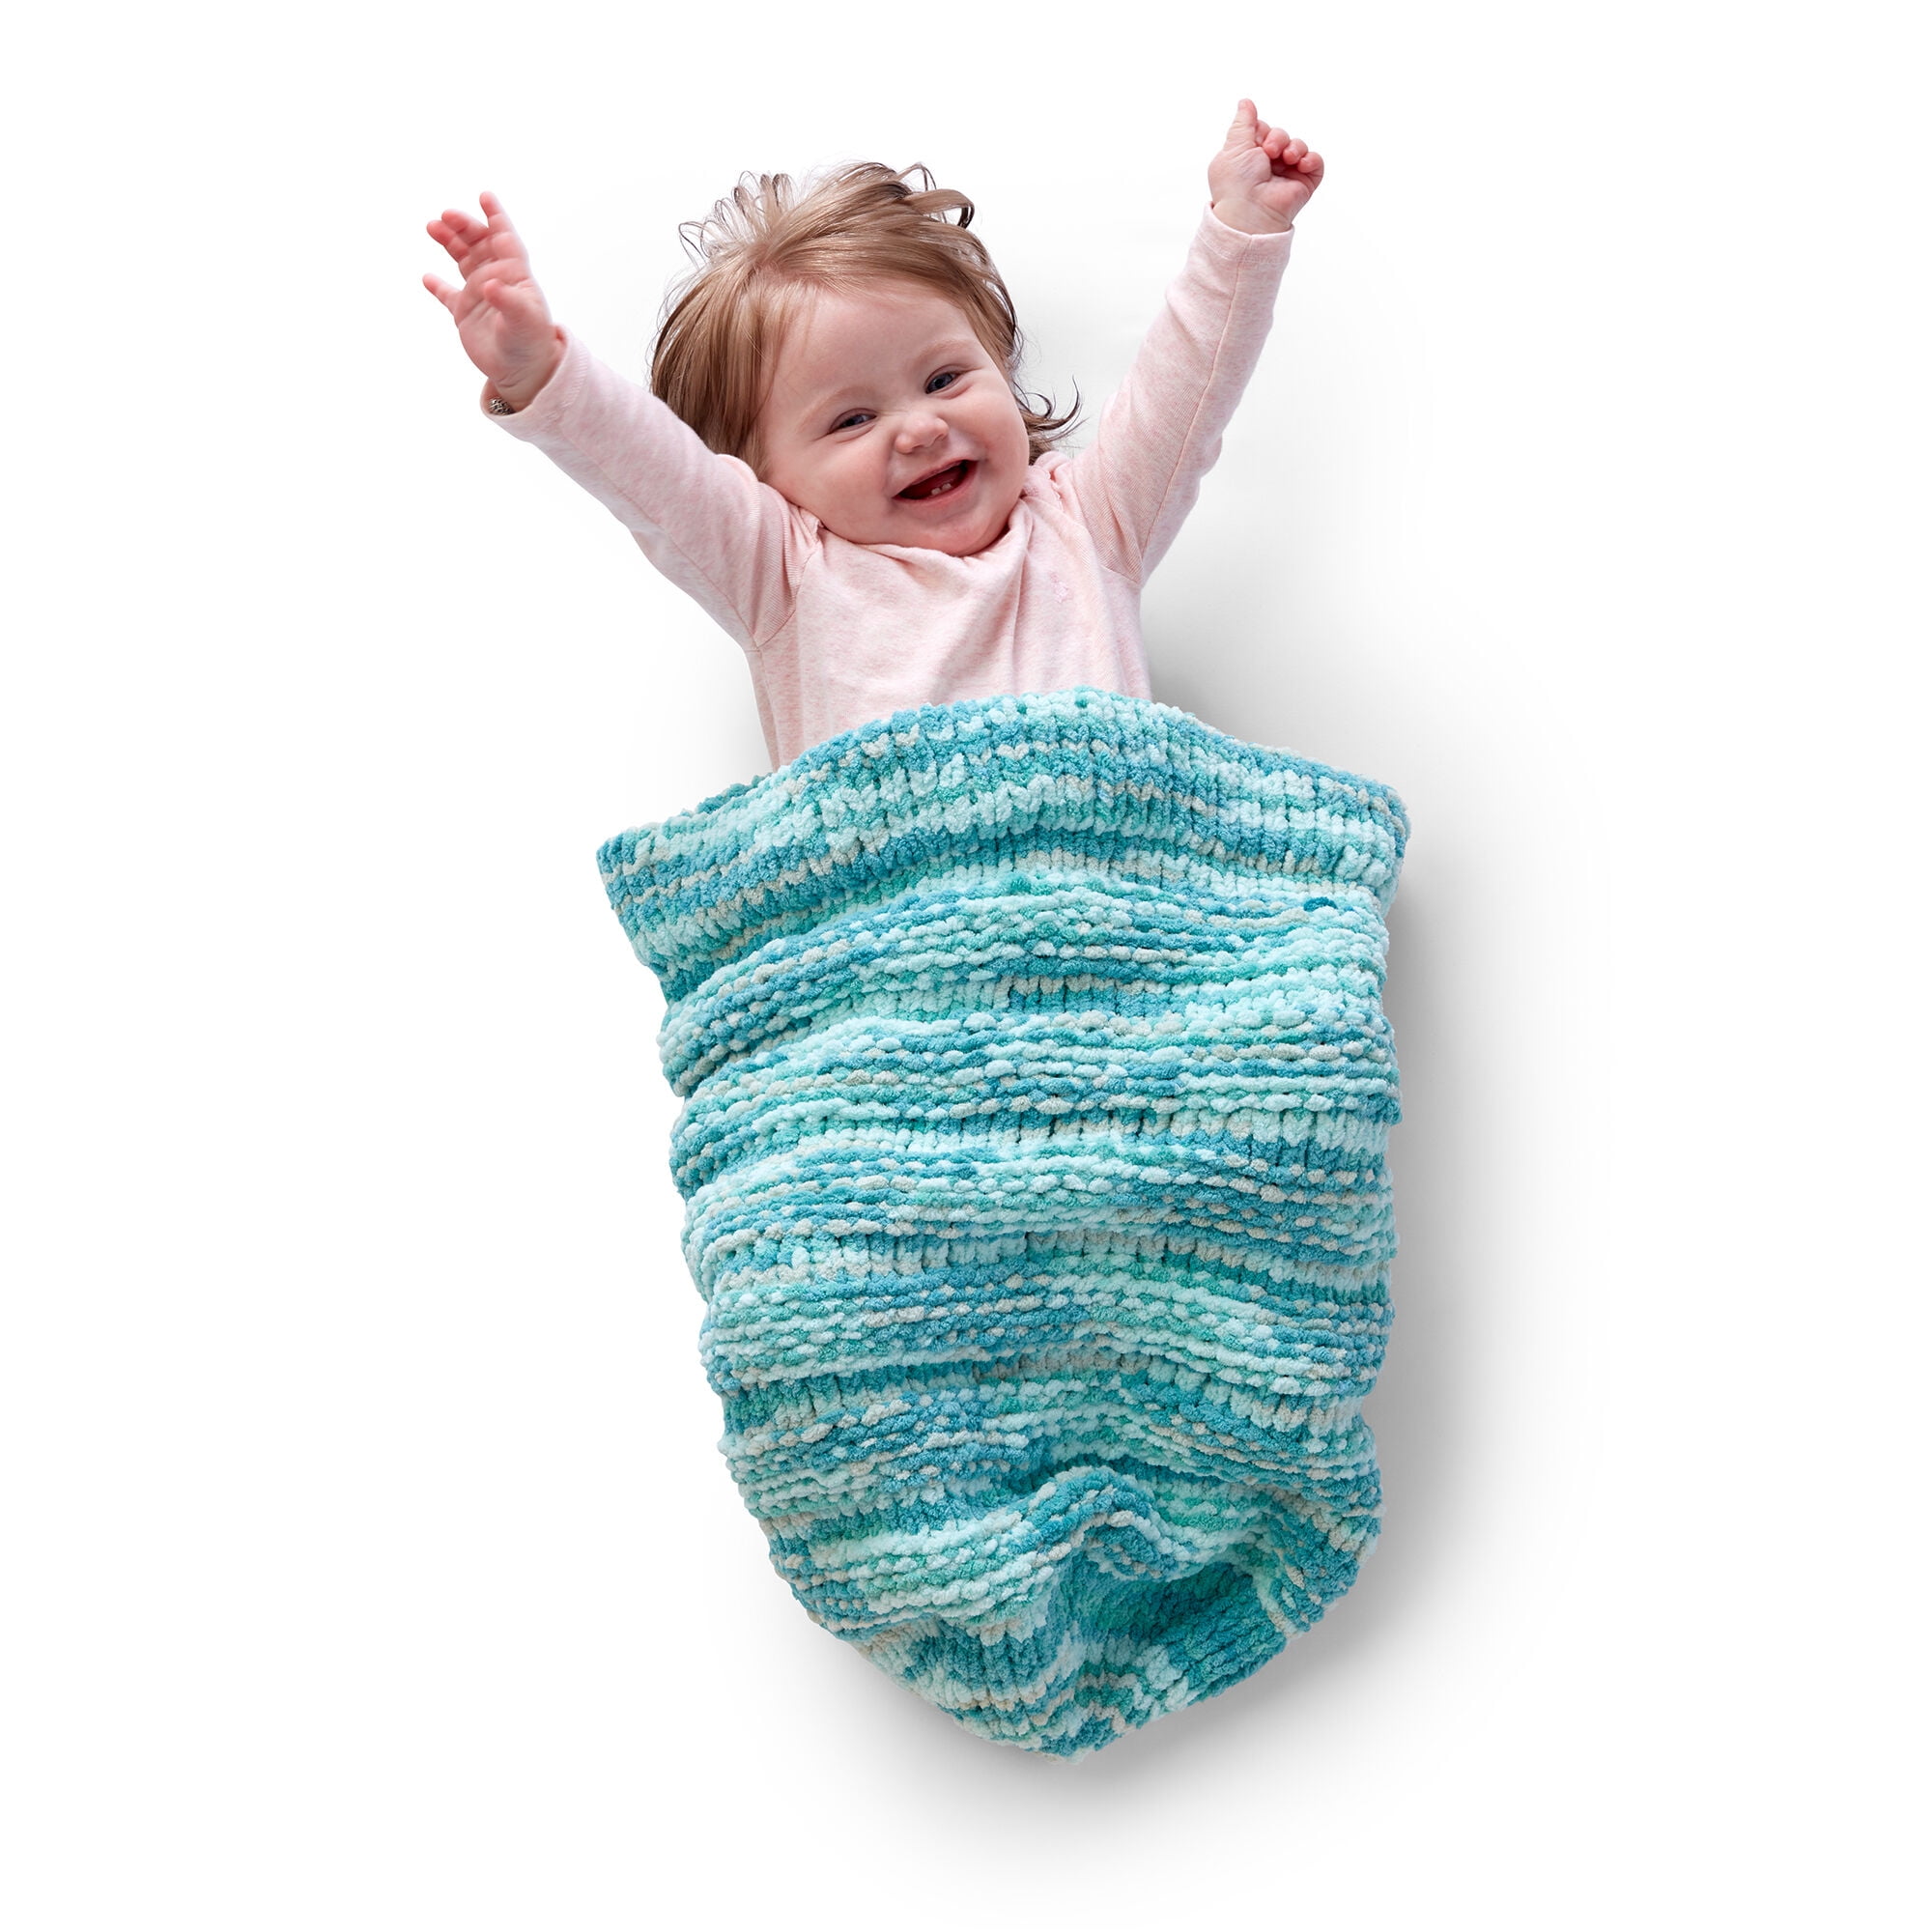 Bernat Baby Blanket Yarn 6-pack - Baby Blue - 9001042